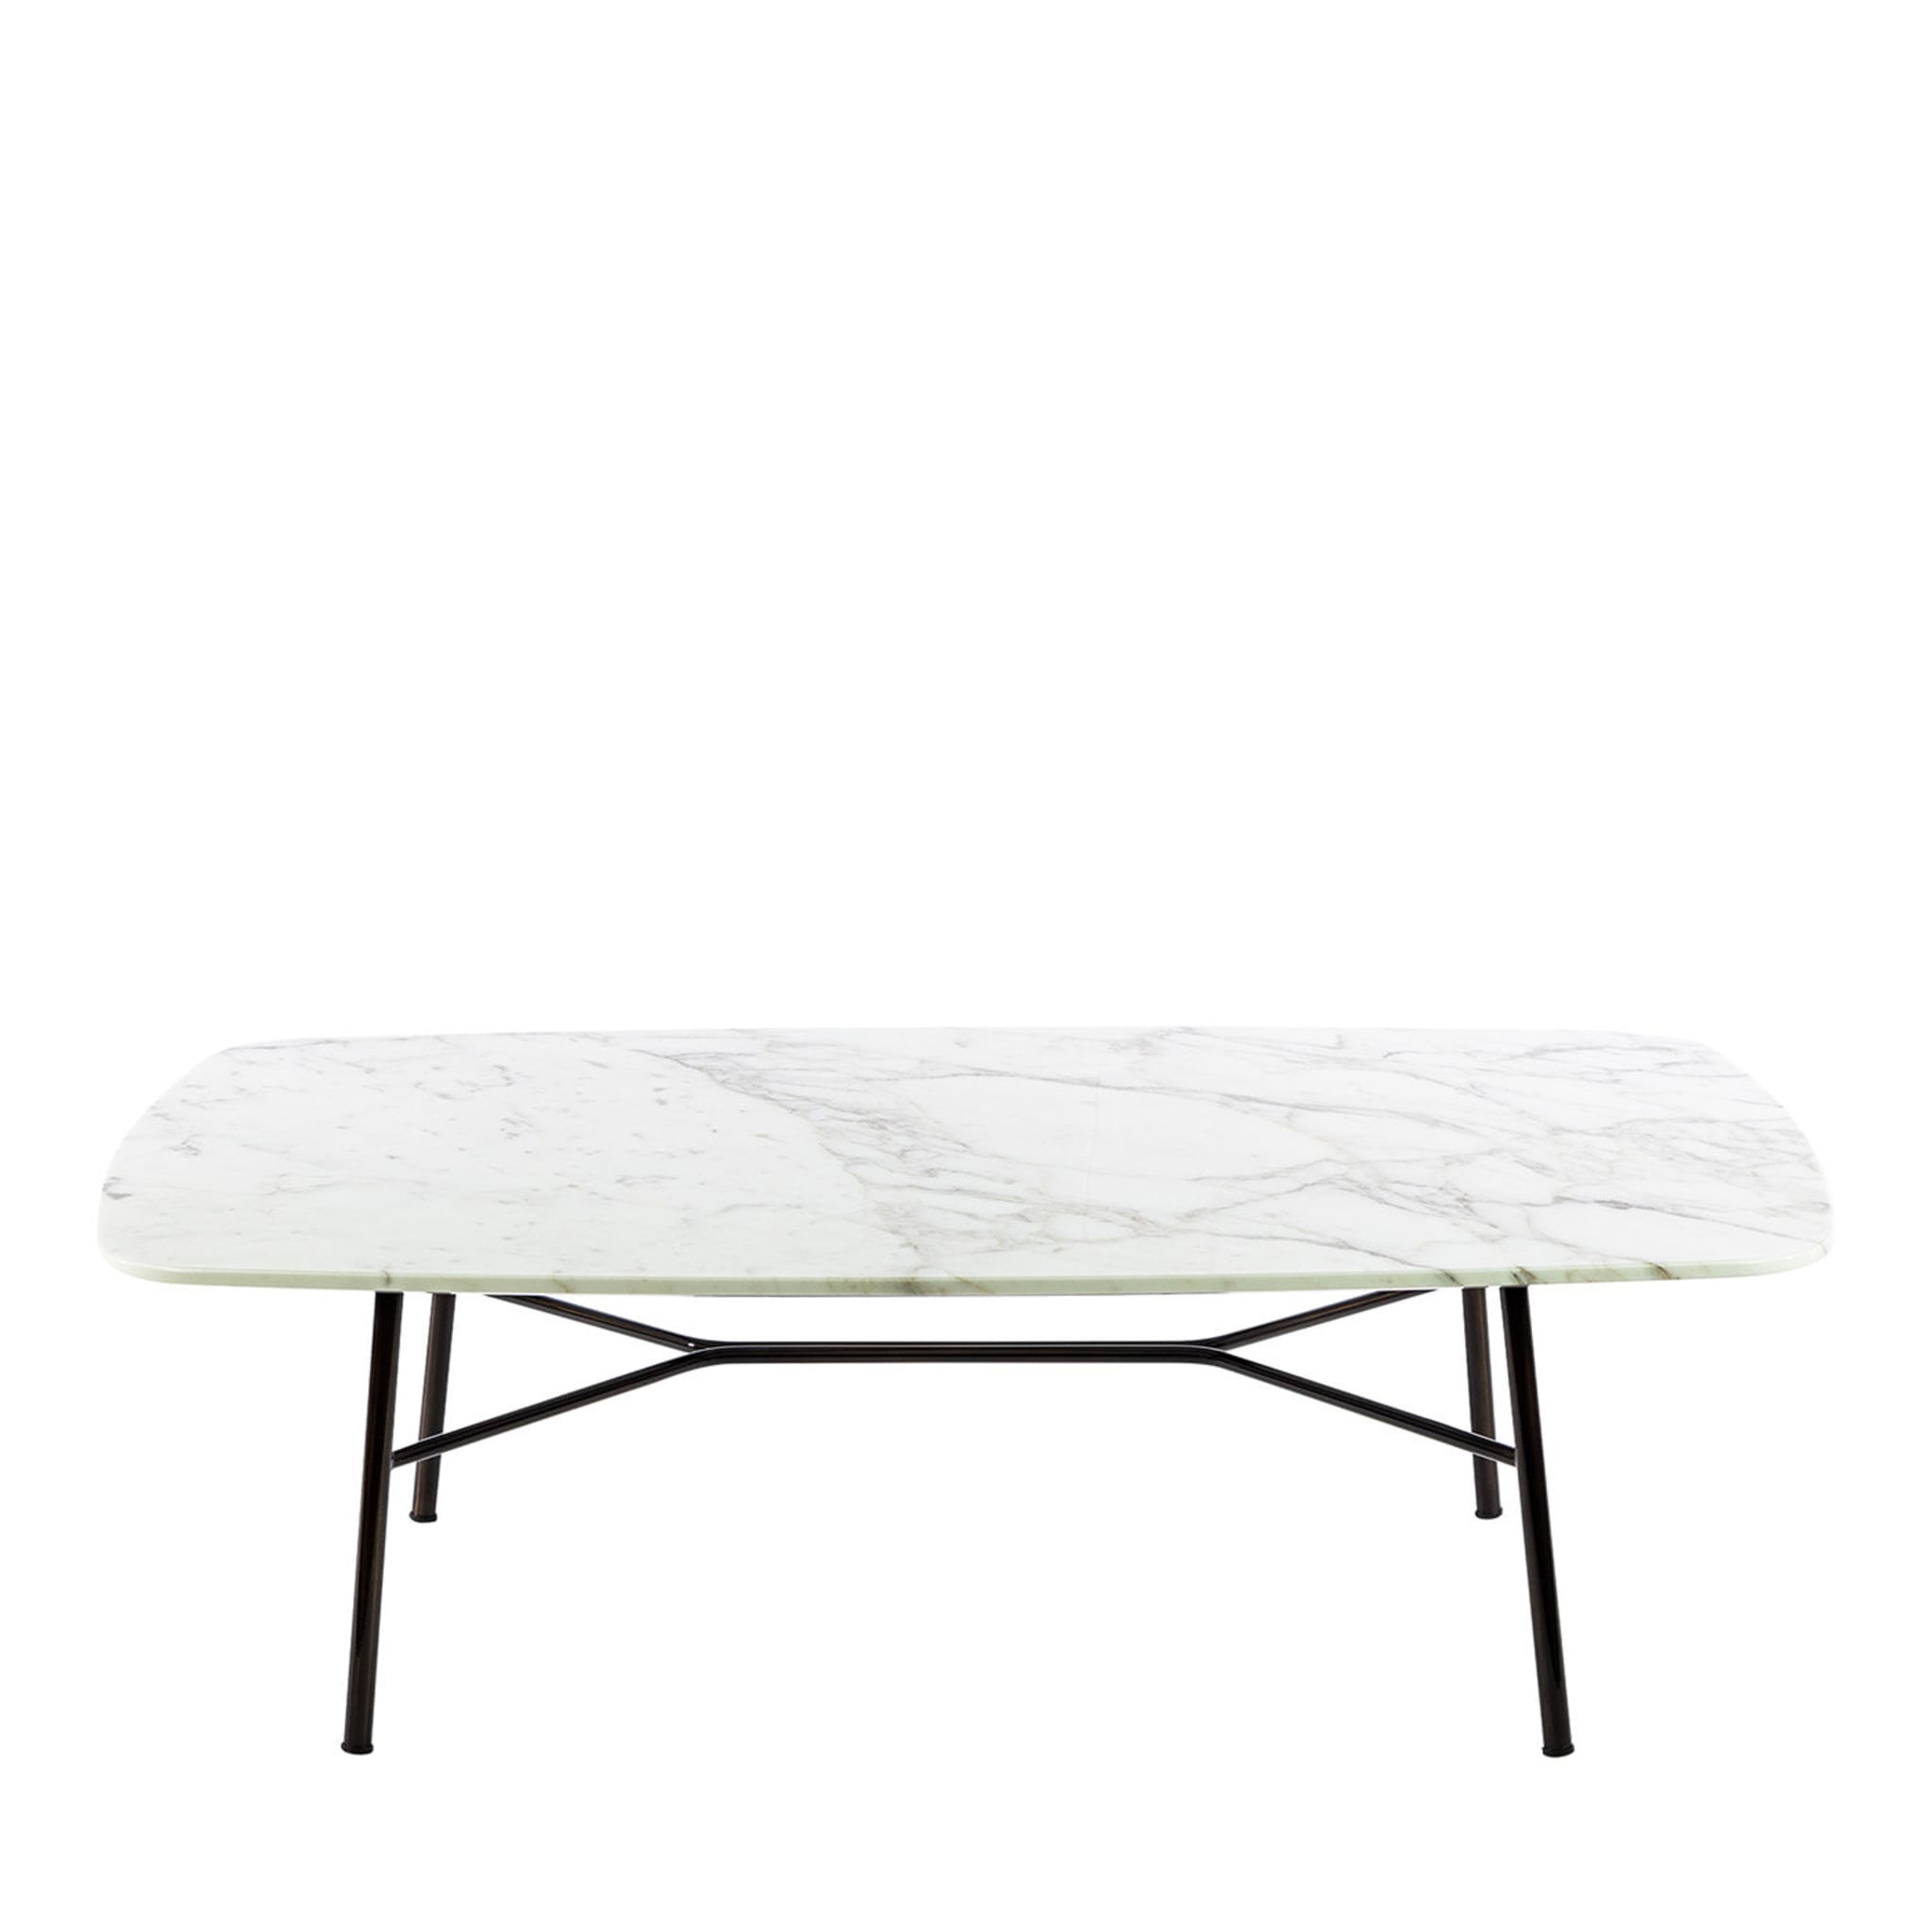 Table basse rectangulaire Yuki avec plateau en carrare blanc # 2 par Ep Studio - Vue principale